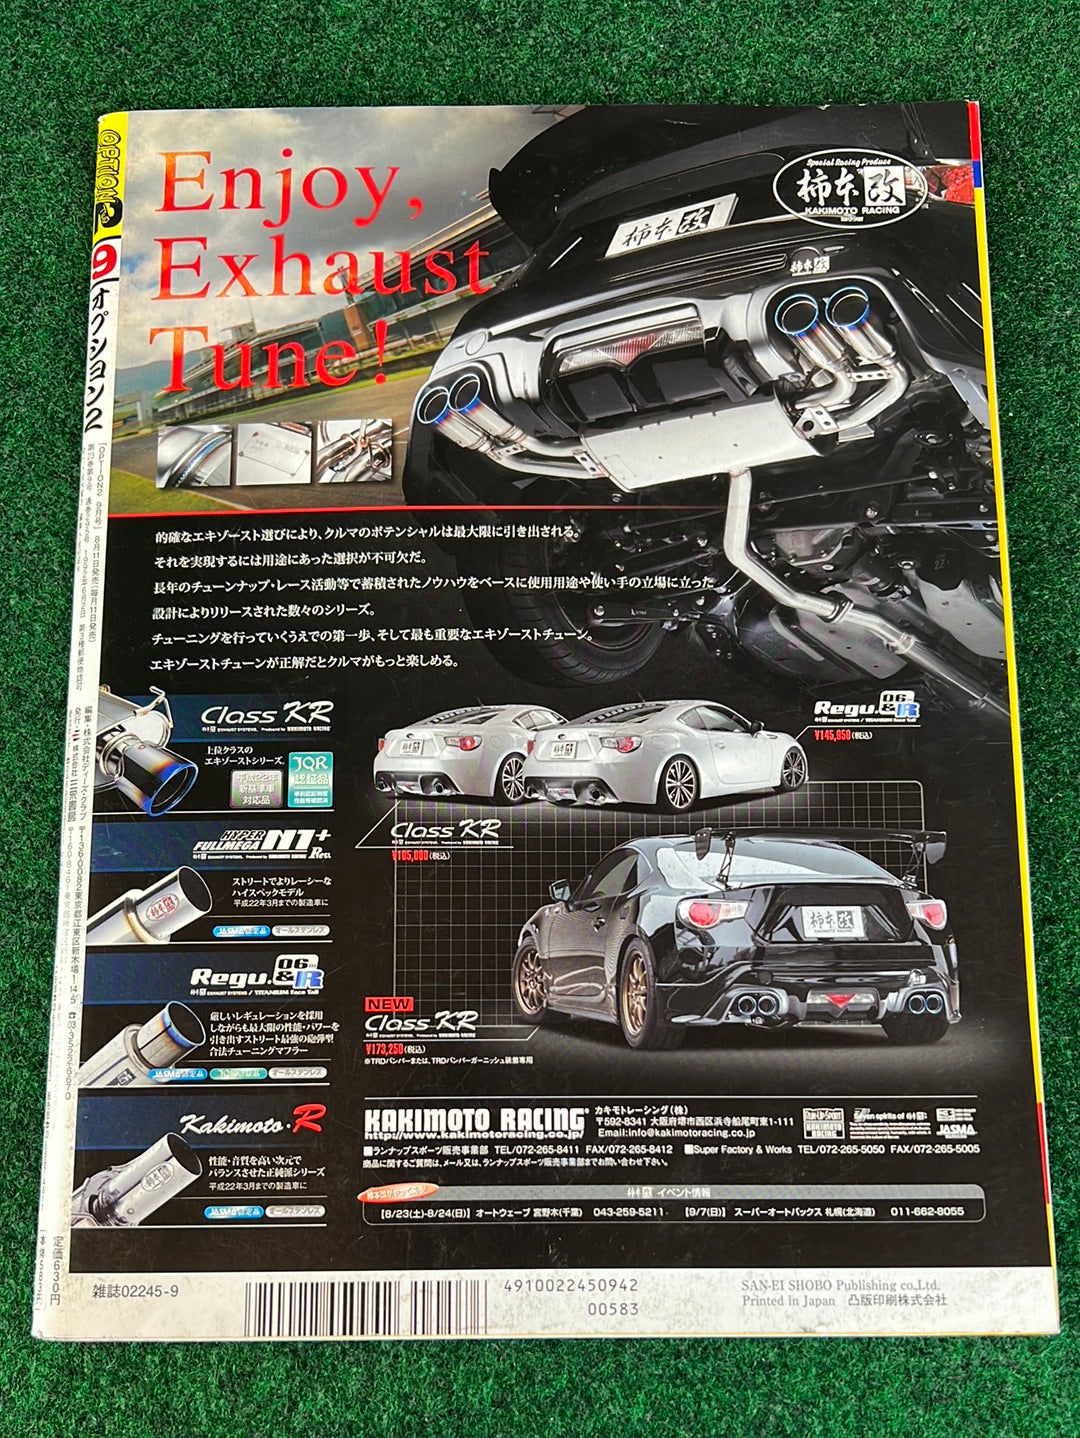 OPTION2 Magazine - September 2014